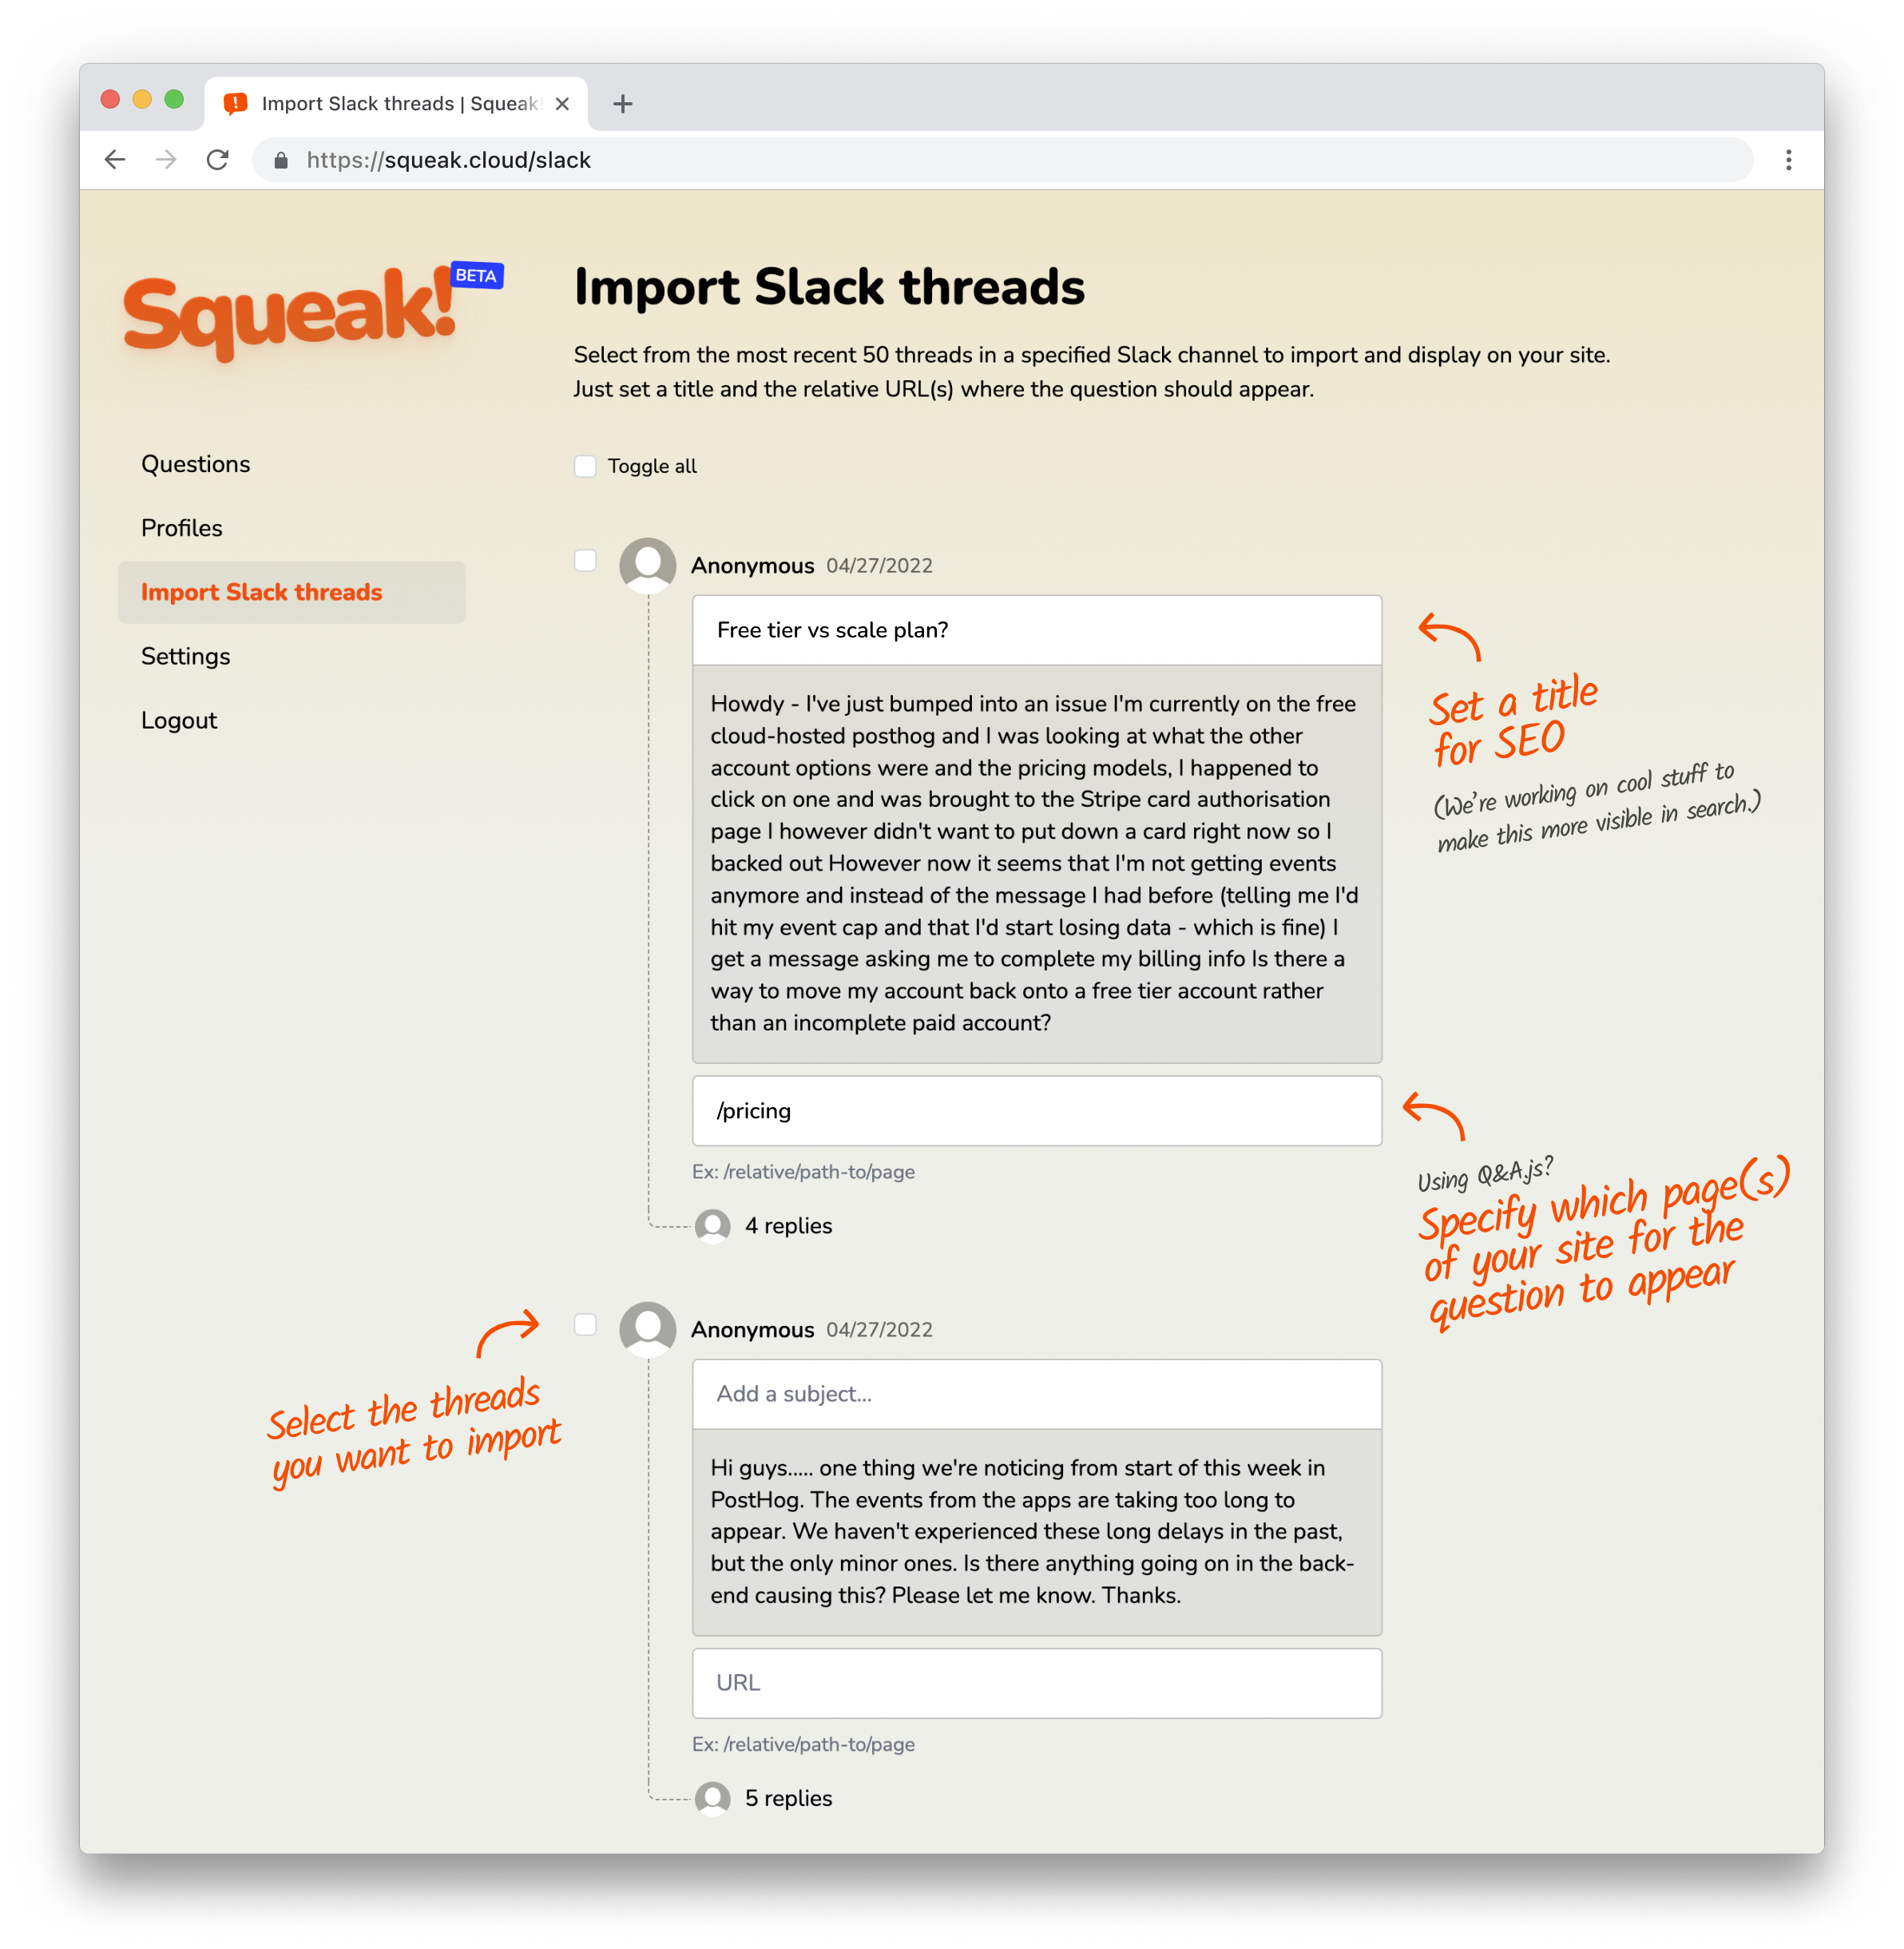 Import Slack Threads by Squeak!